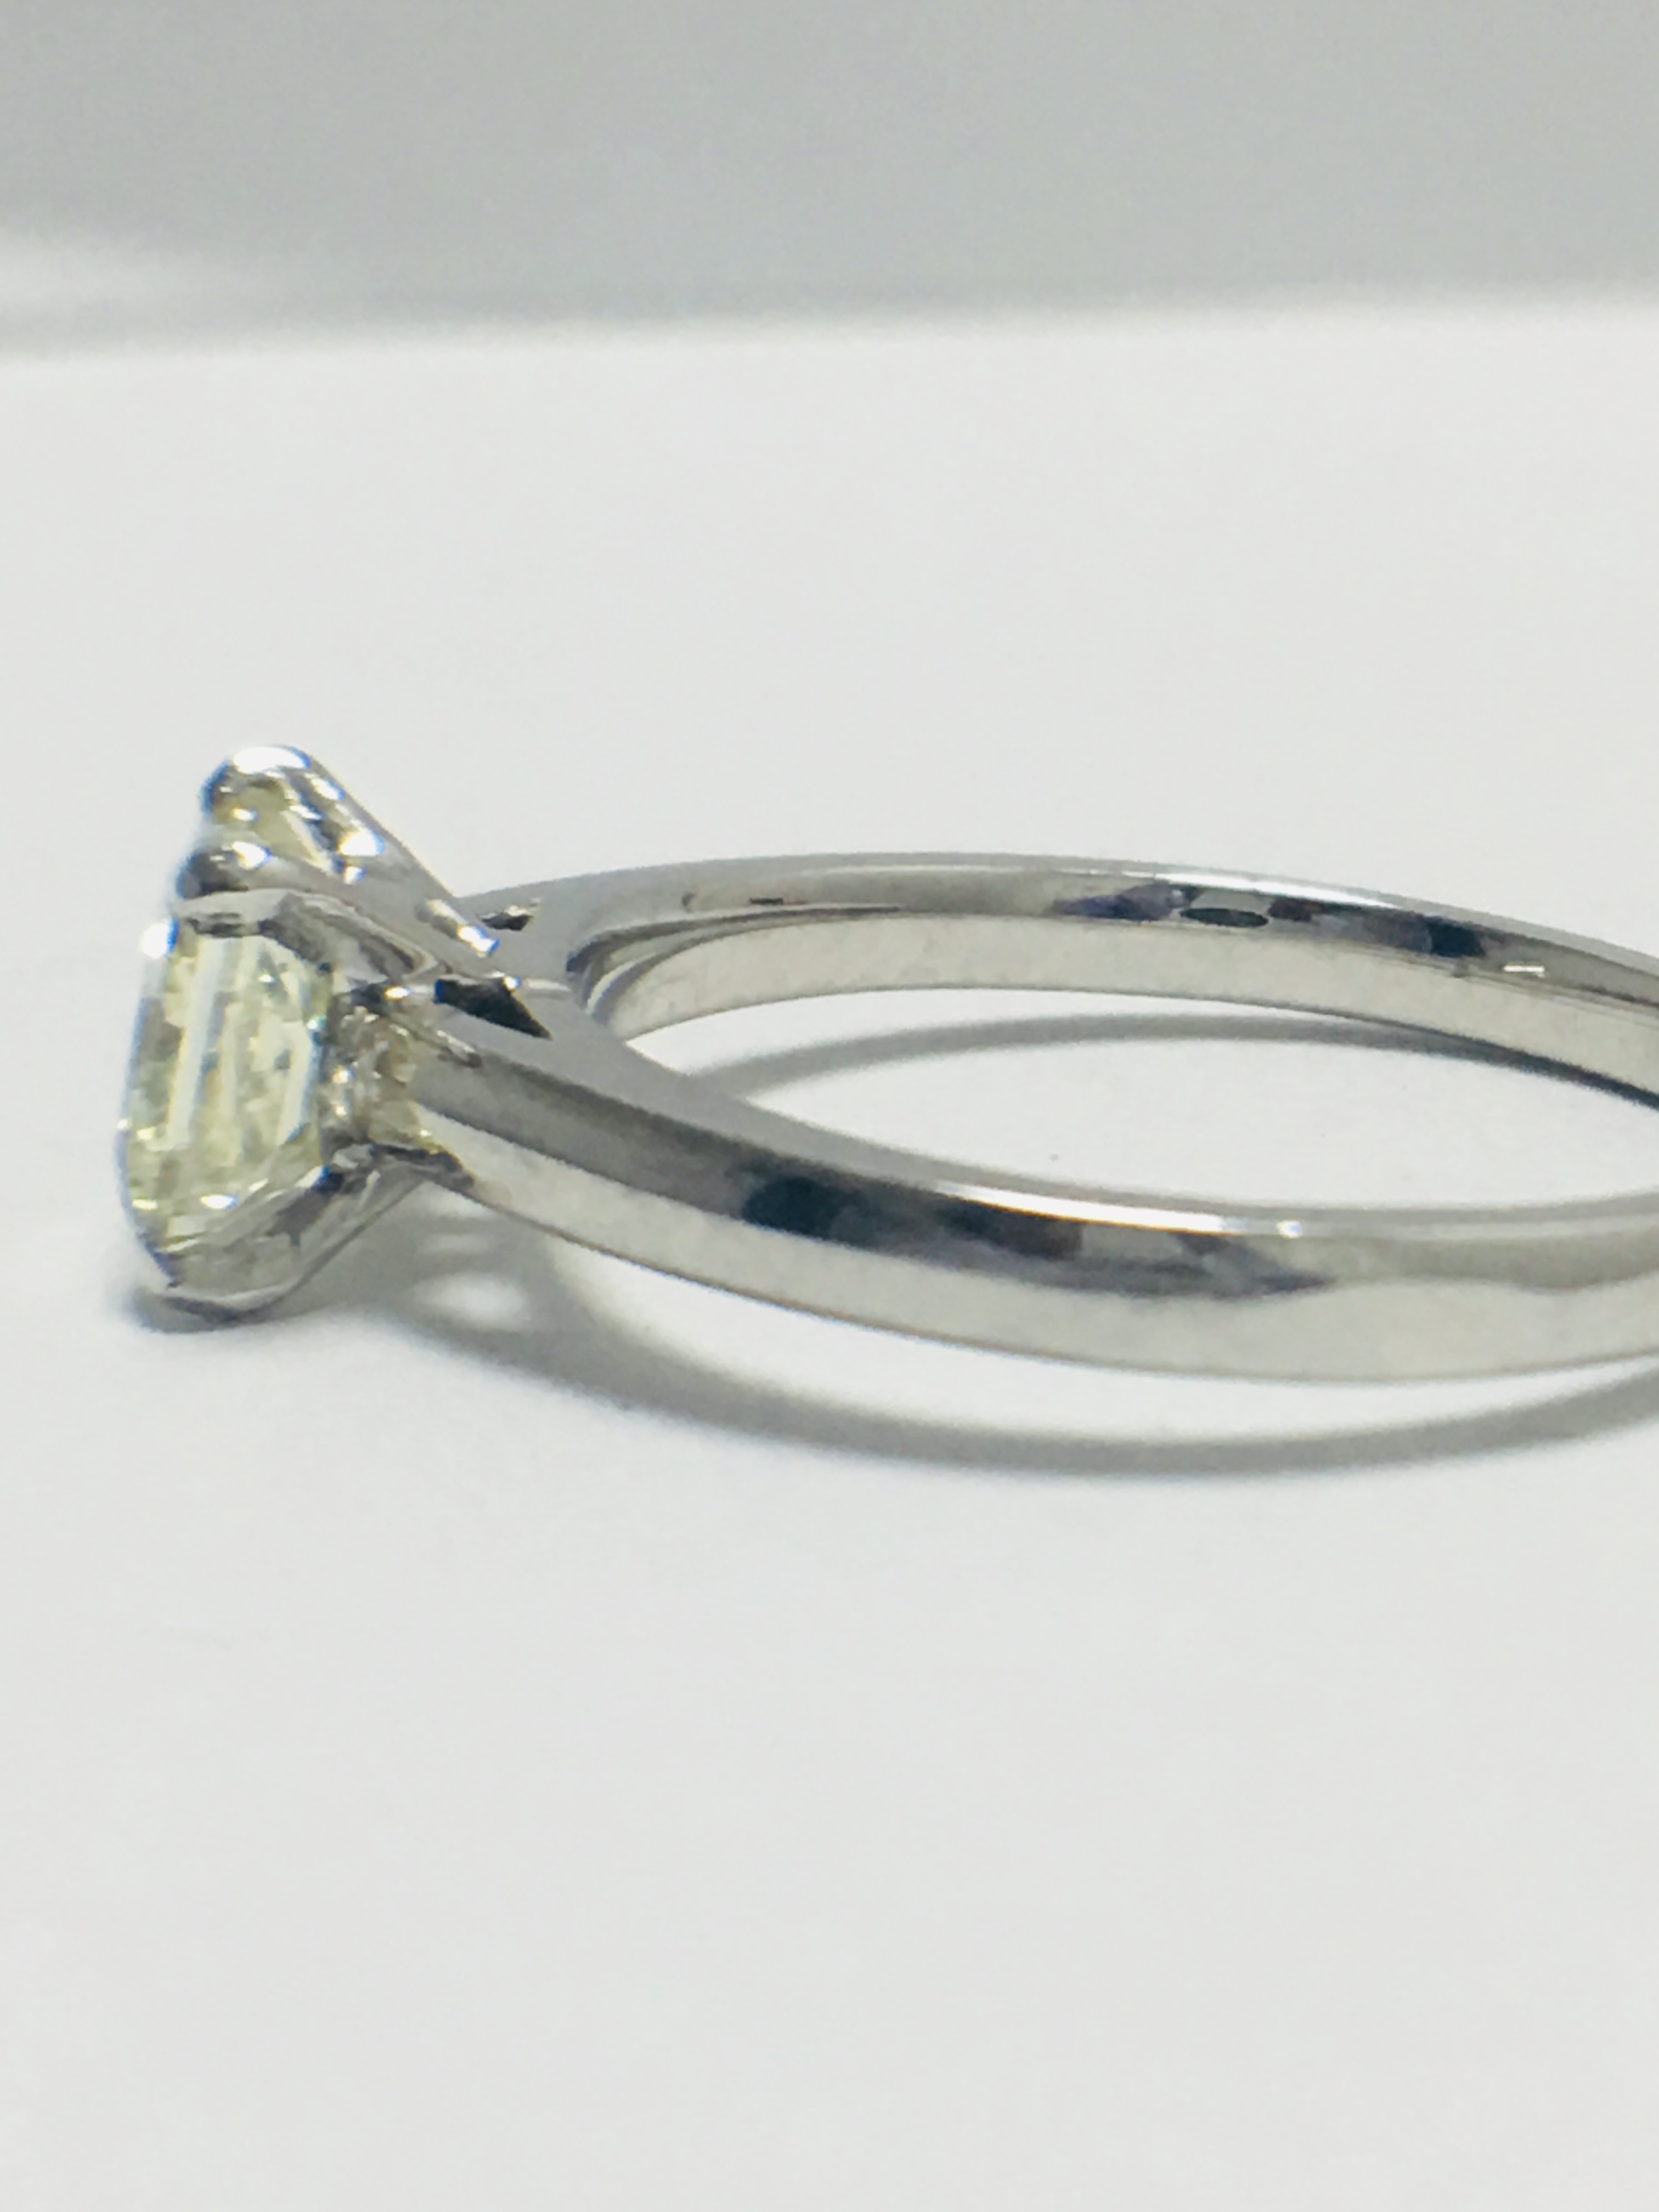 1ct platinum Diamond solitaire ring - Image 3 of 8